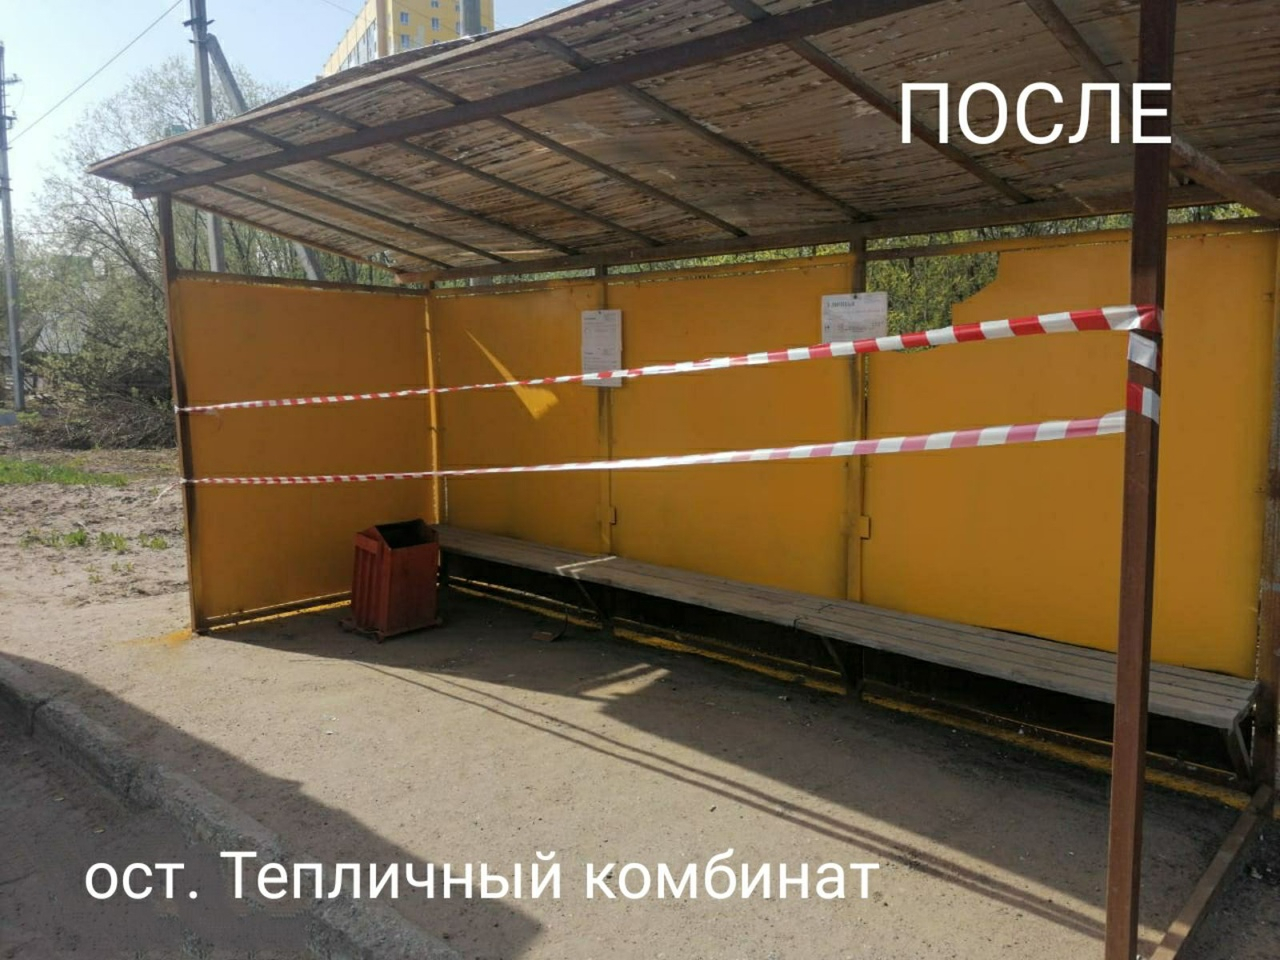 Эксперты назвали «раскраску» остановок в Сыктывкаре бесполезной имитацией работы